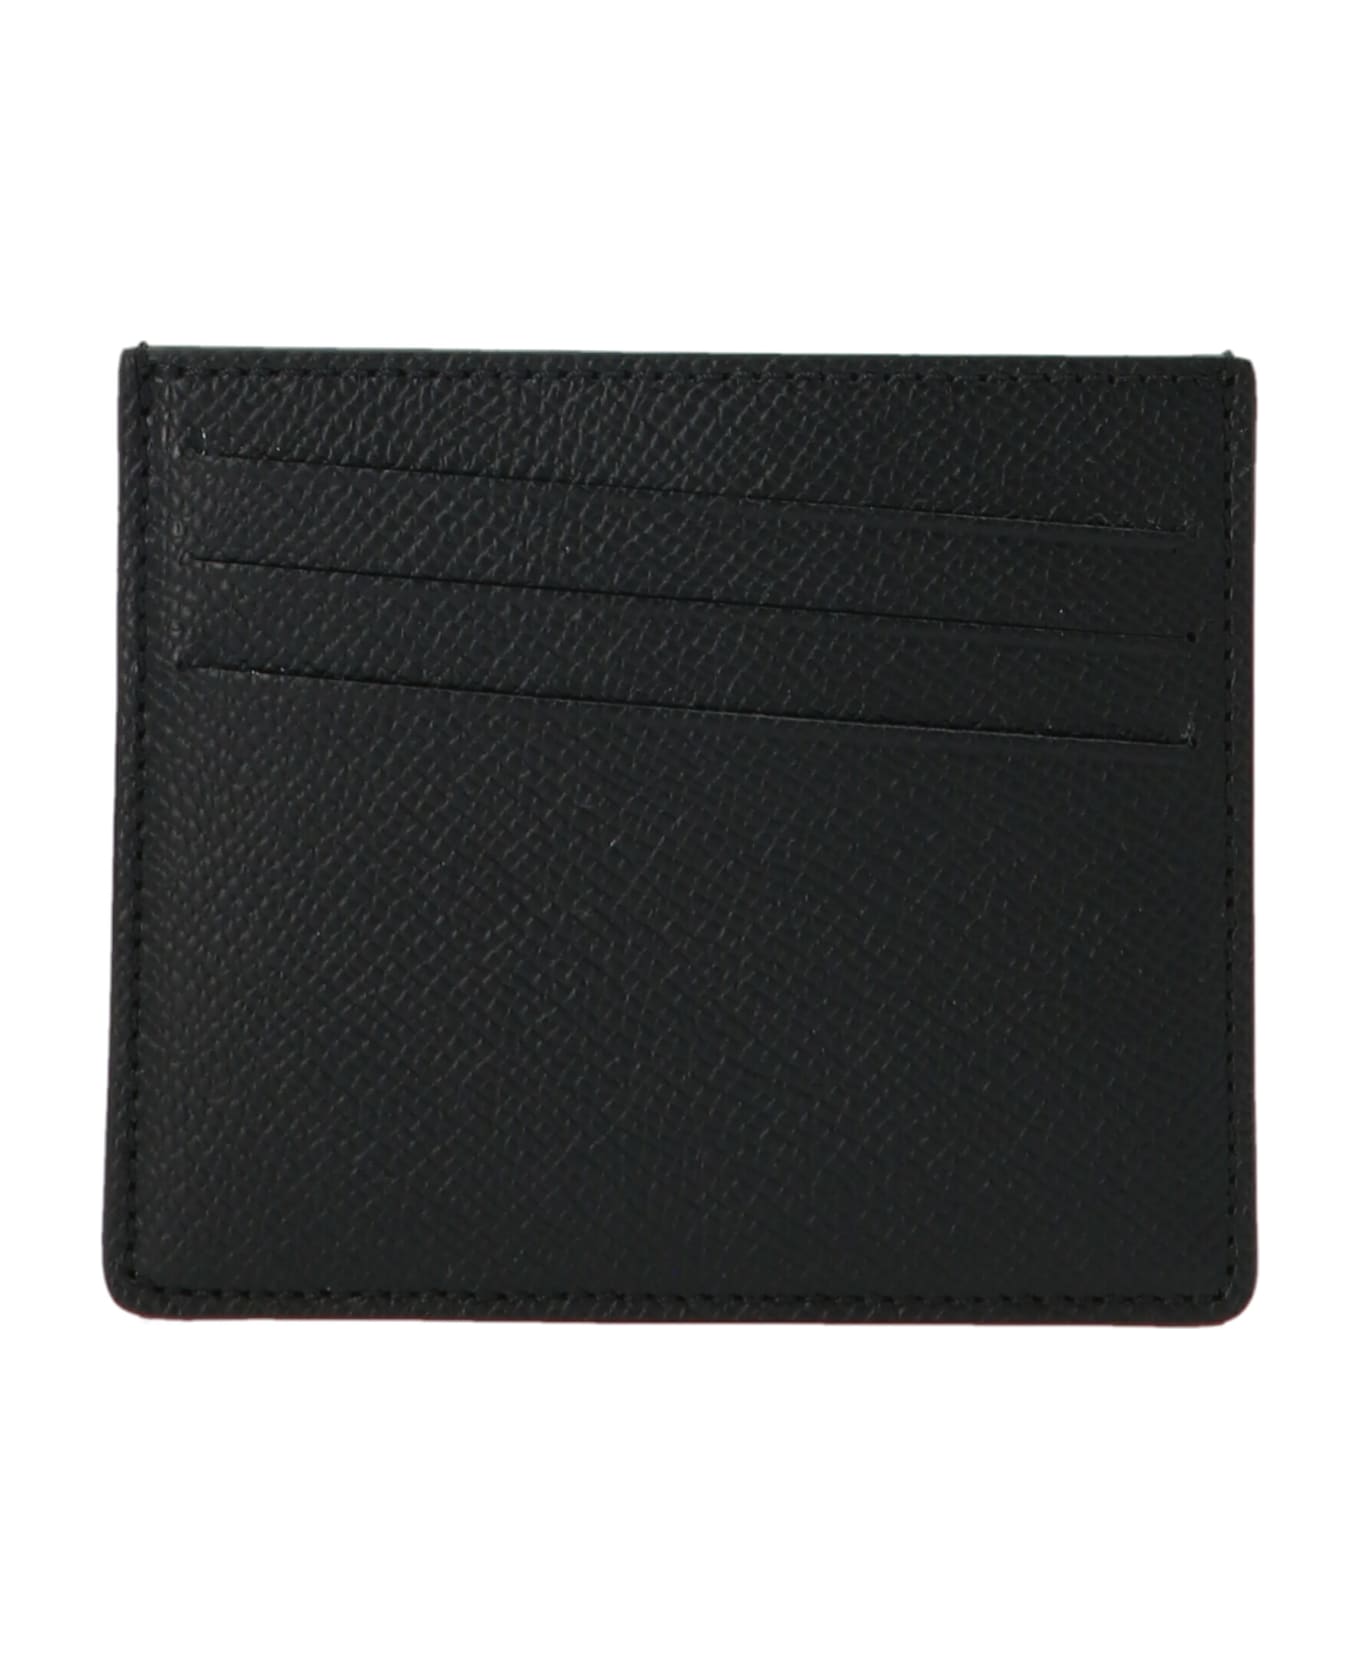 Maison Margiela 'stitching' Card Holder - Black  